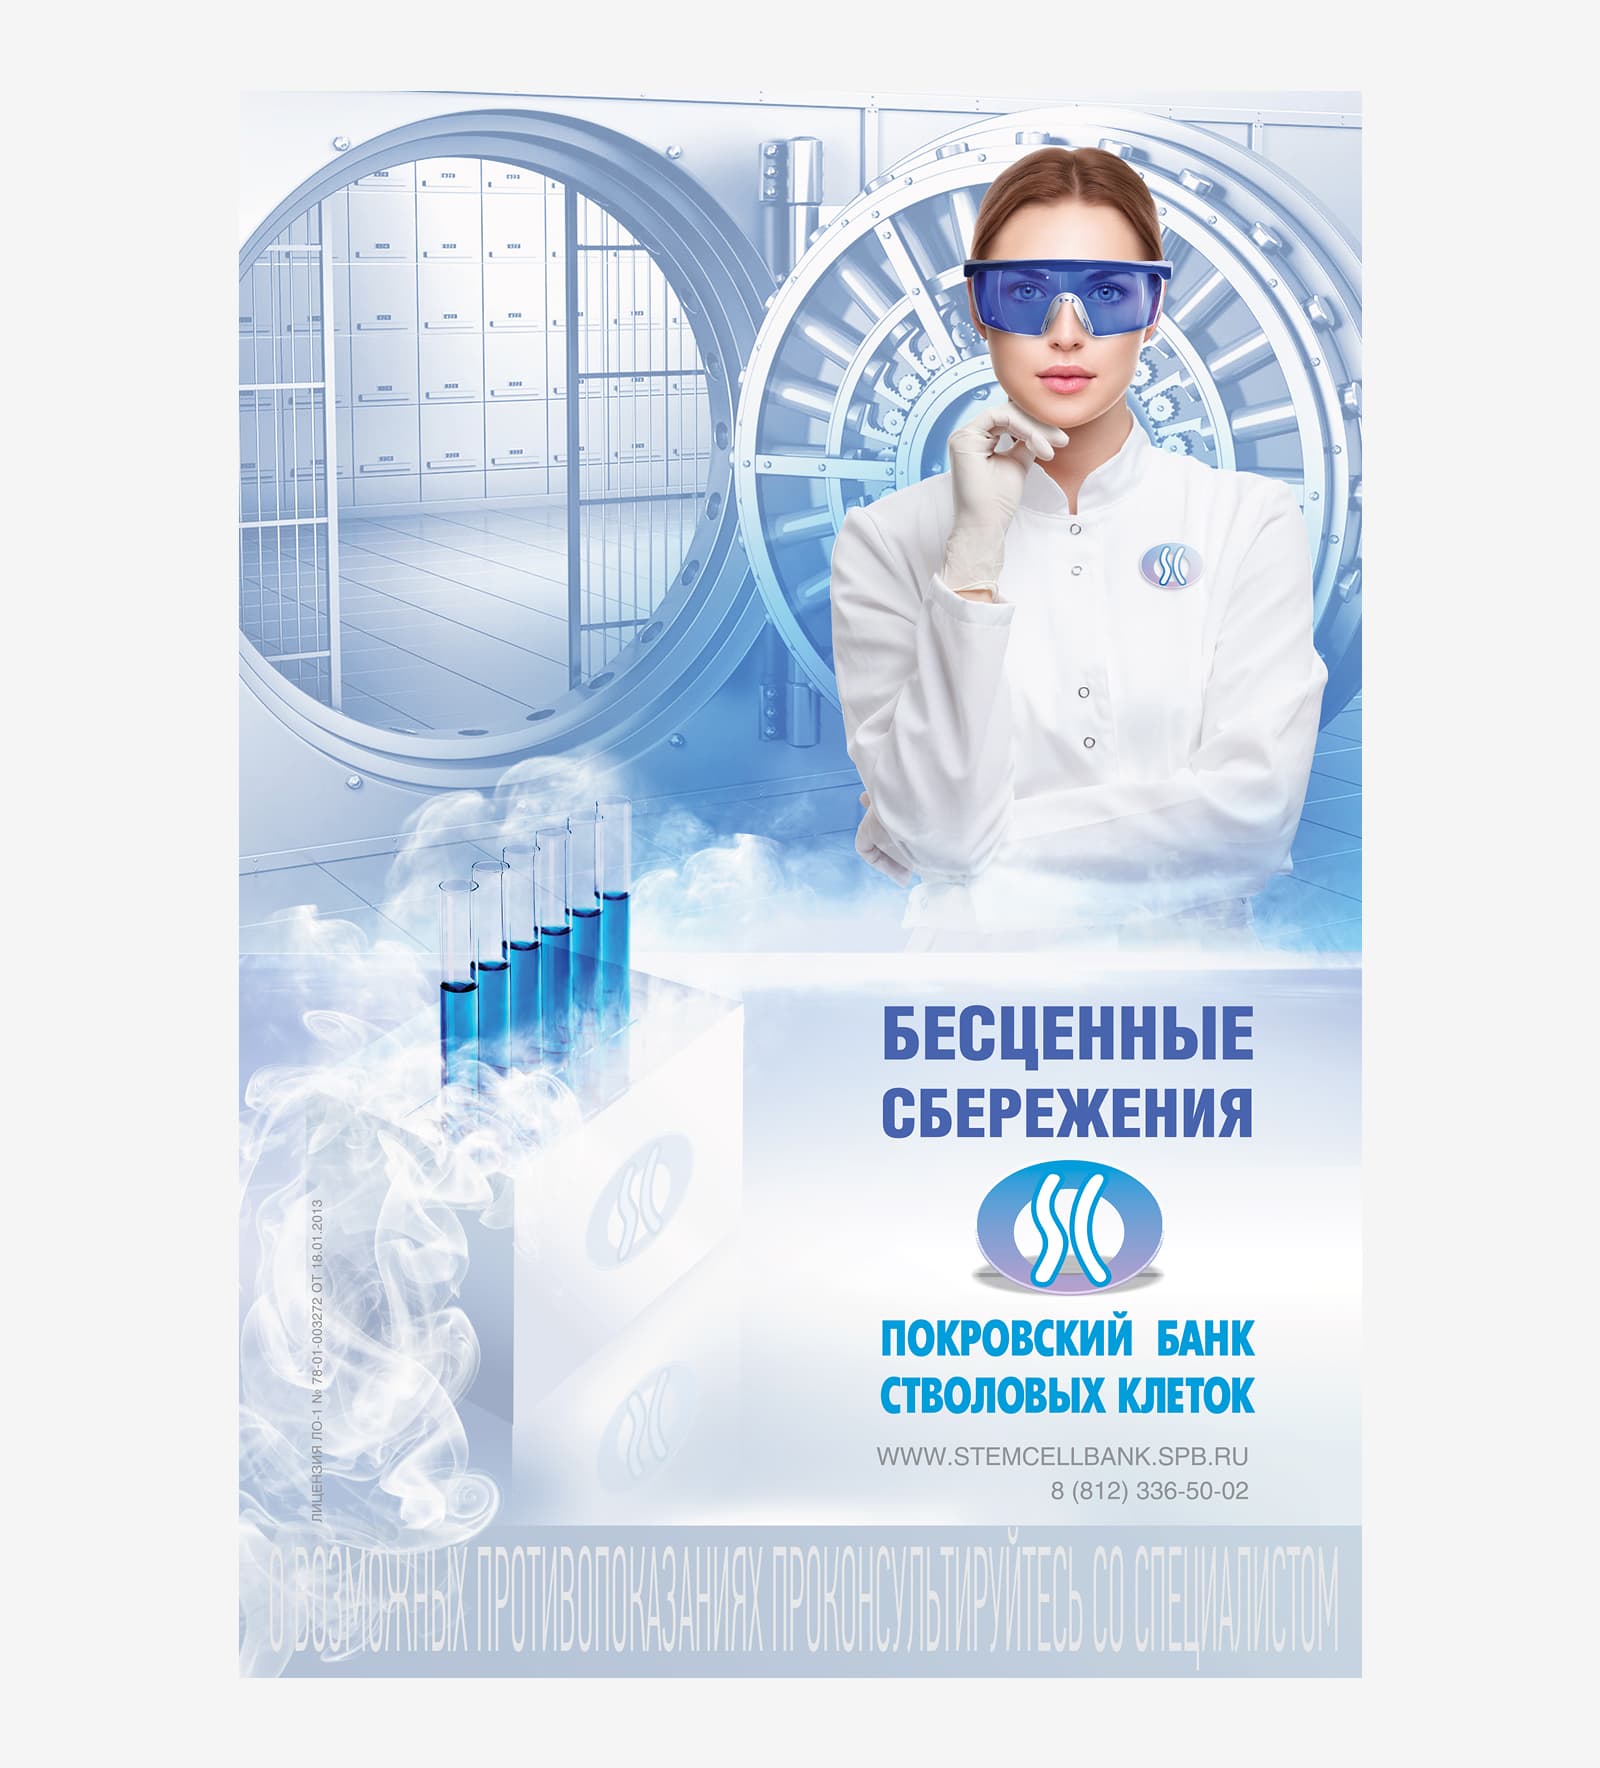 Сделали креативную рекламу для компании «Покровский банк стволовых клеток»